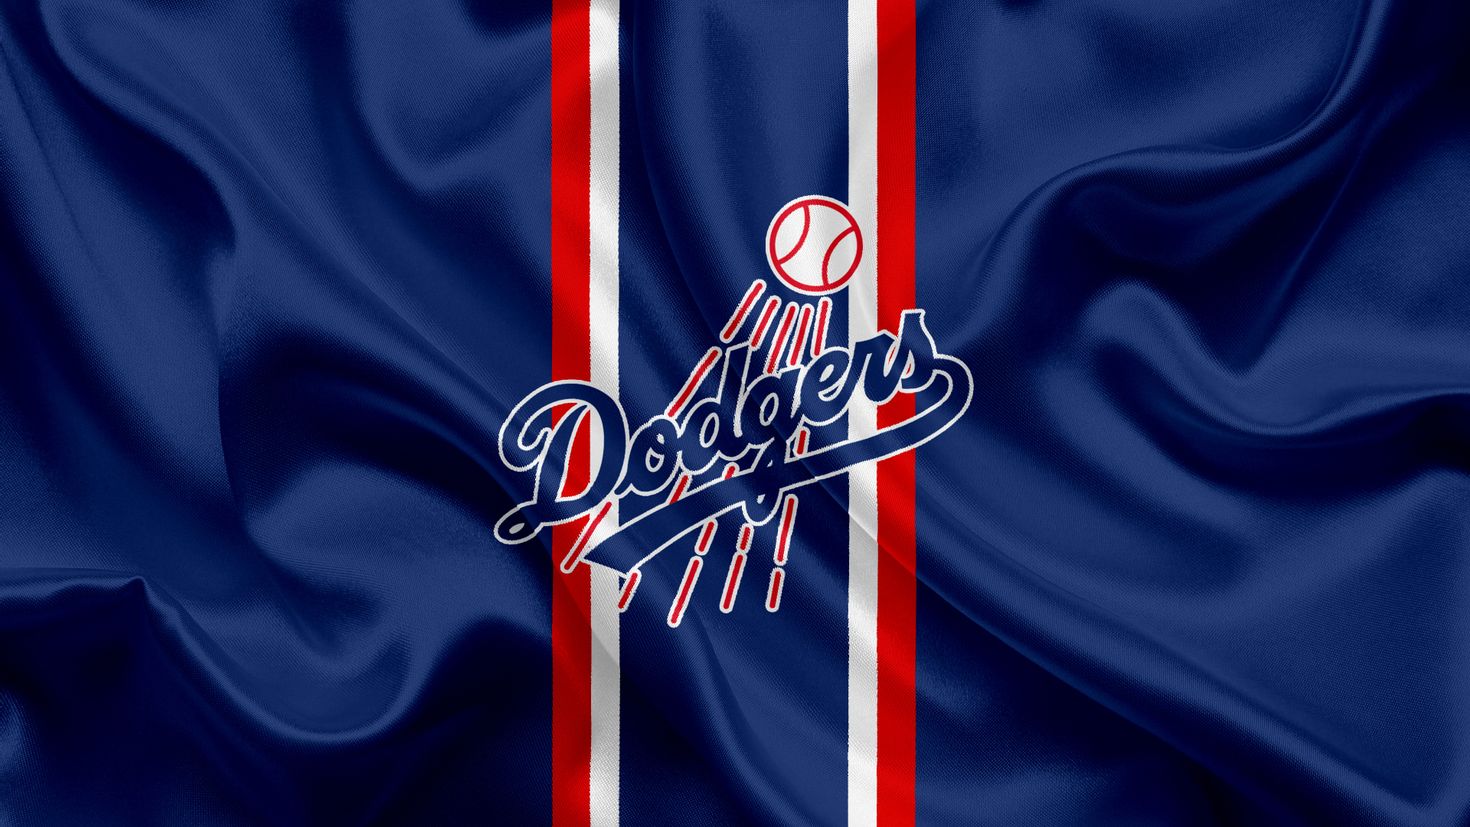 Los angeles dodgers. Лос-Анджелес Доджерс. Лос Анджелес Бейсбол. Los Angeles Dodgers logo. Dodgers команда.